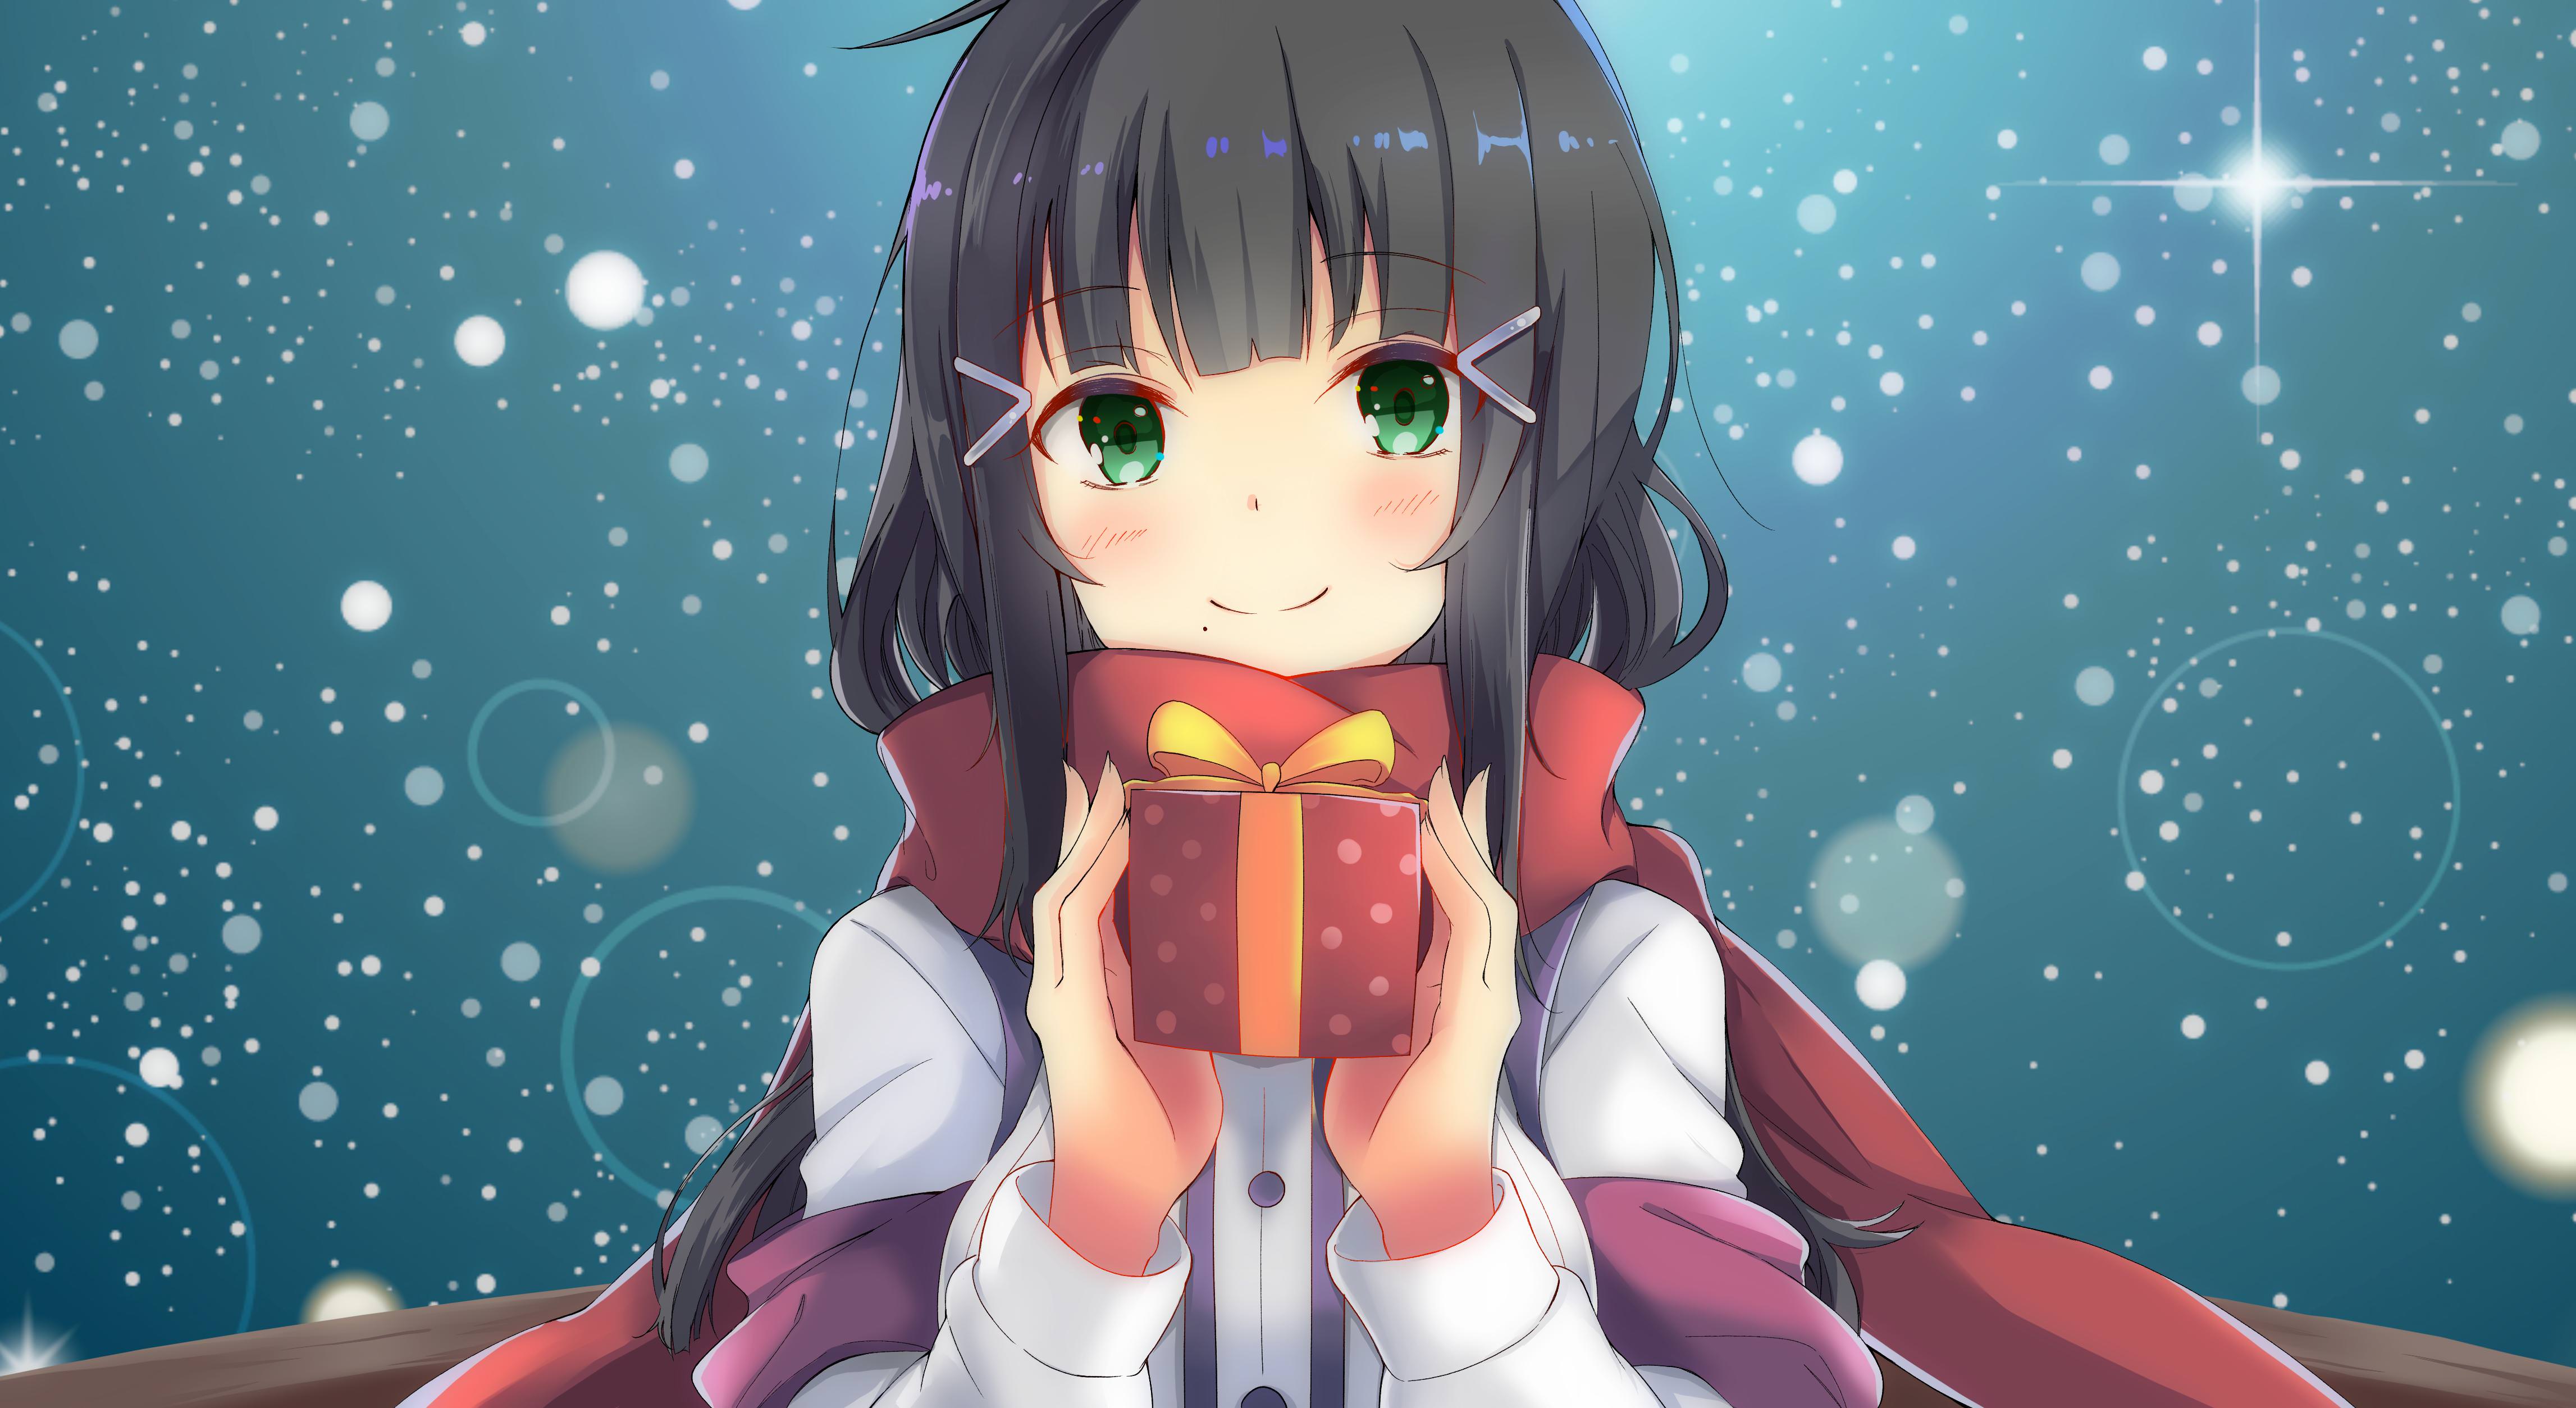 Wallpaper Anime girl, Xmas gift, Winter, HD, 4K